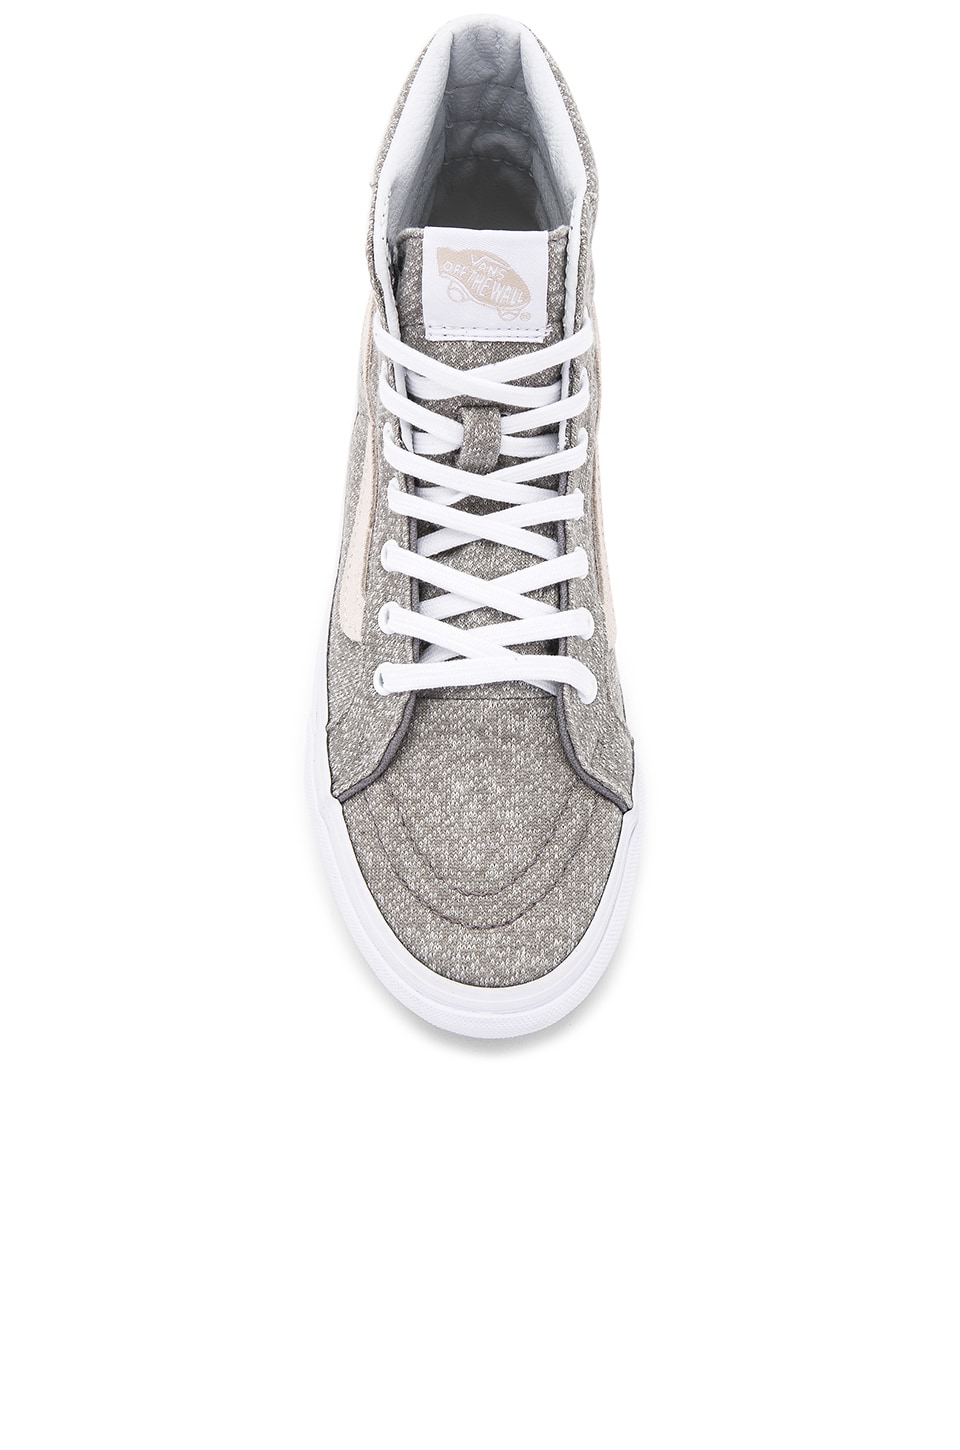 Vans Sk8-Hi Slim Sneaker in Frost Grey & True White | REVOLVE